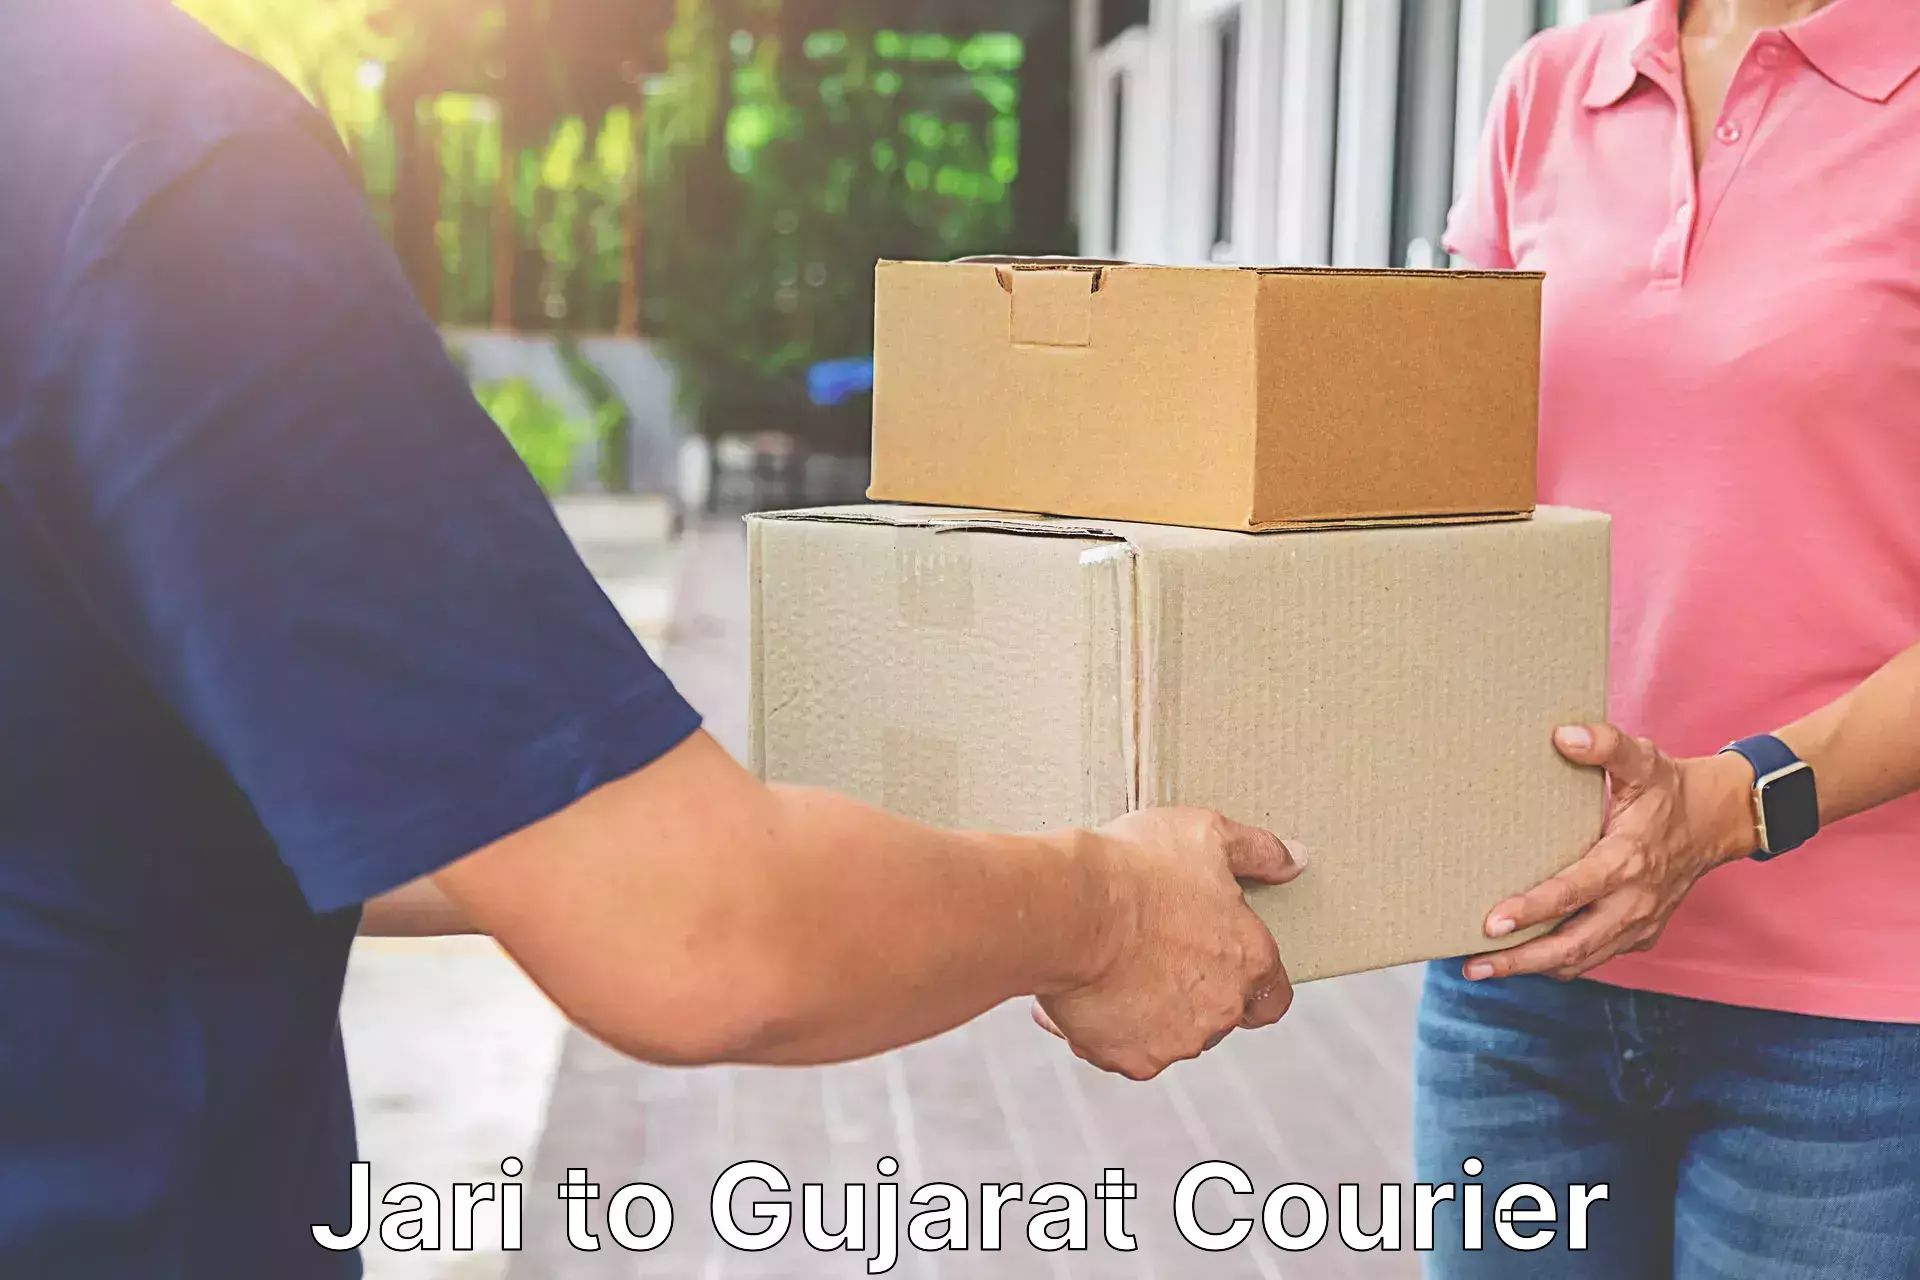 Global courier networks Jari to Bhavnagar